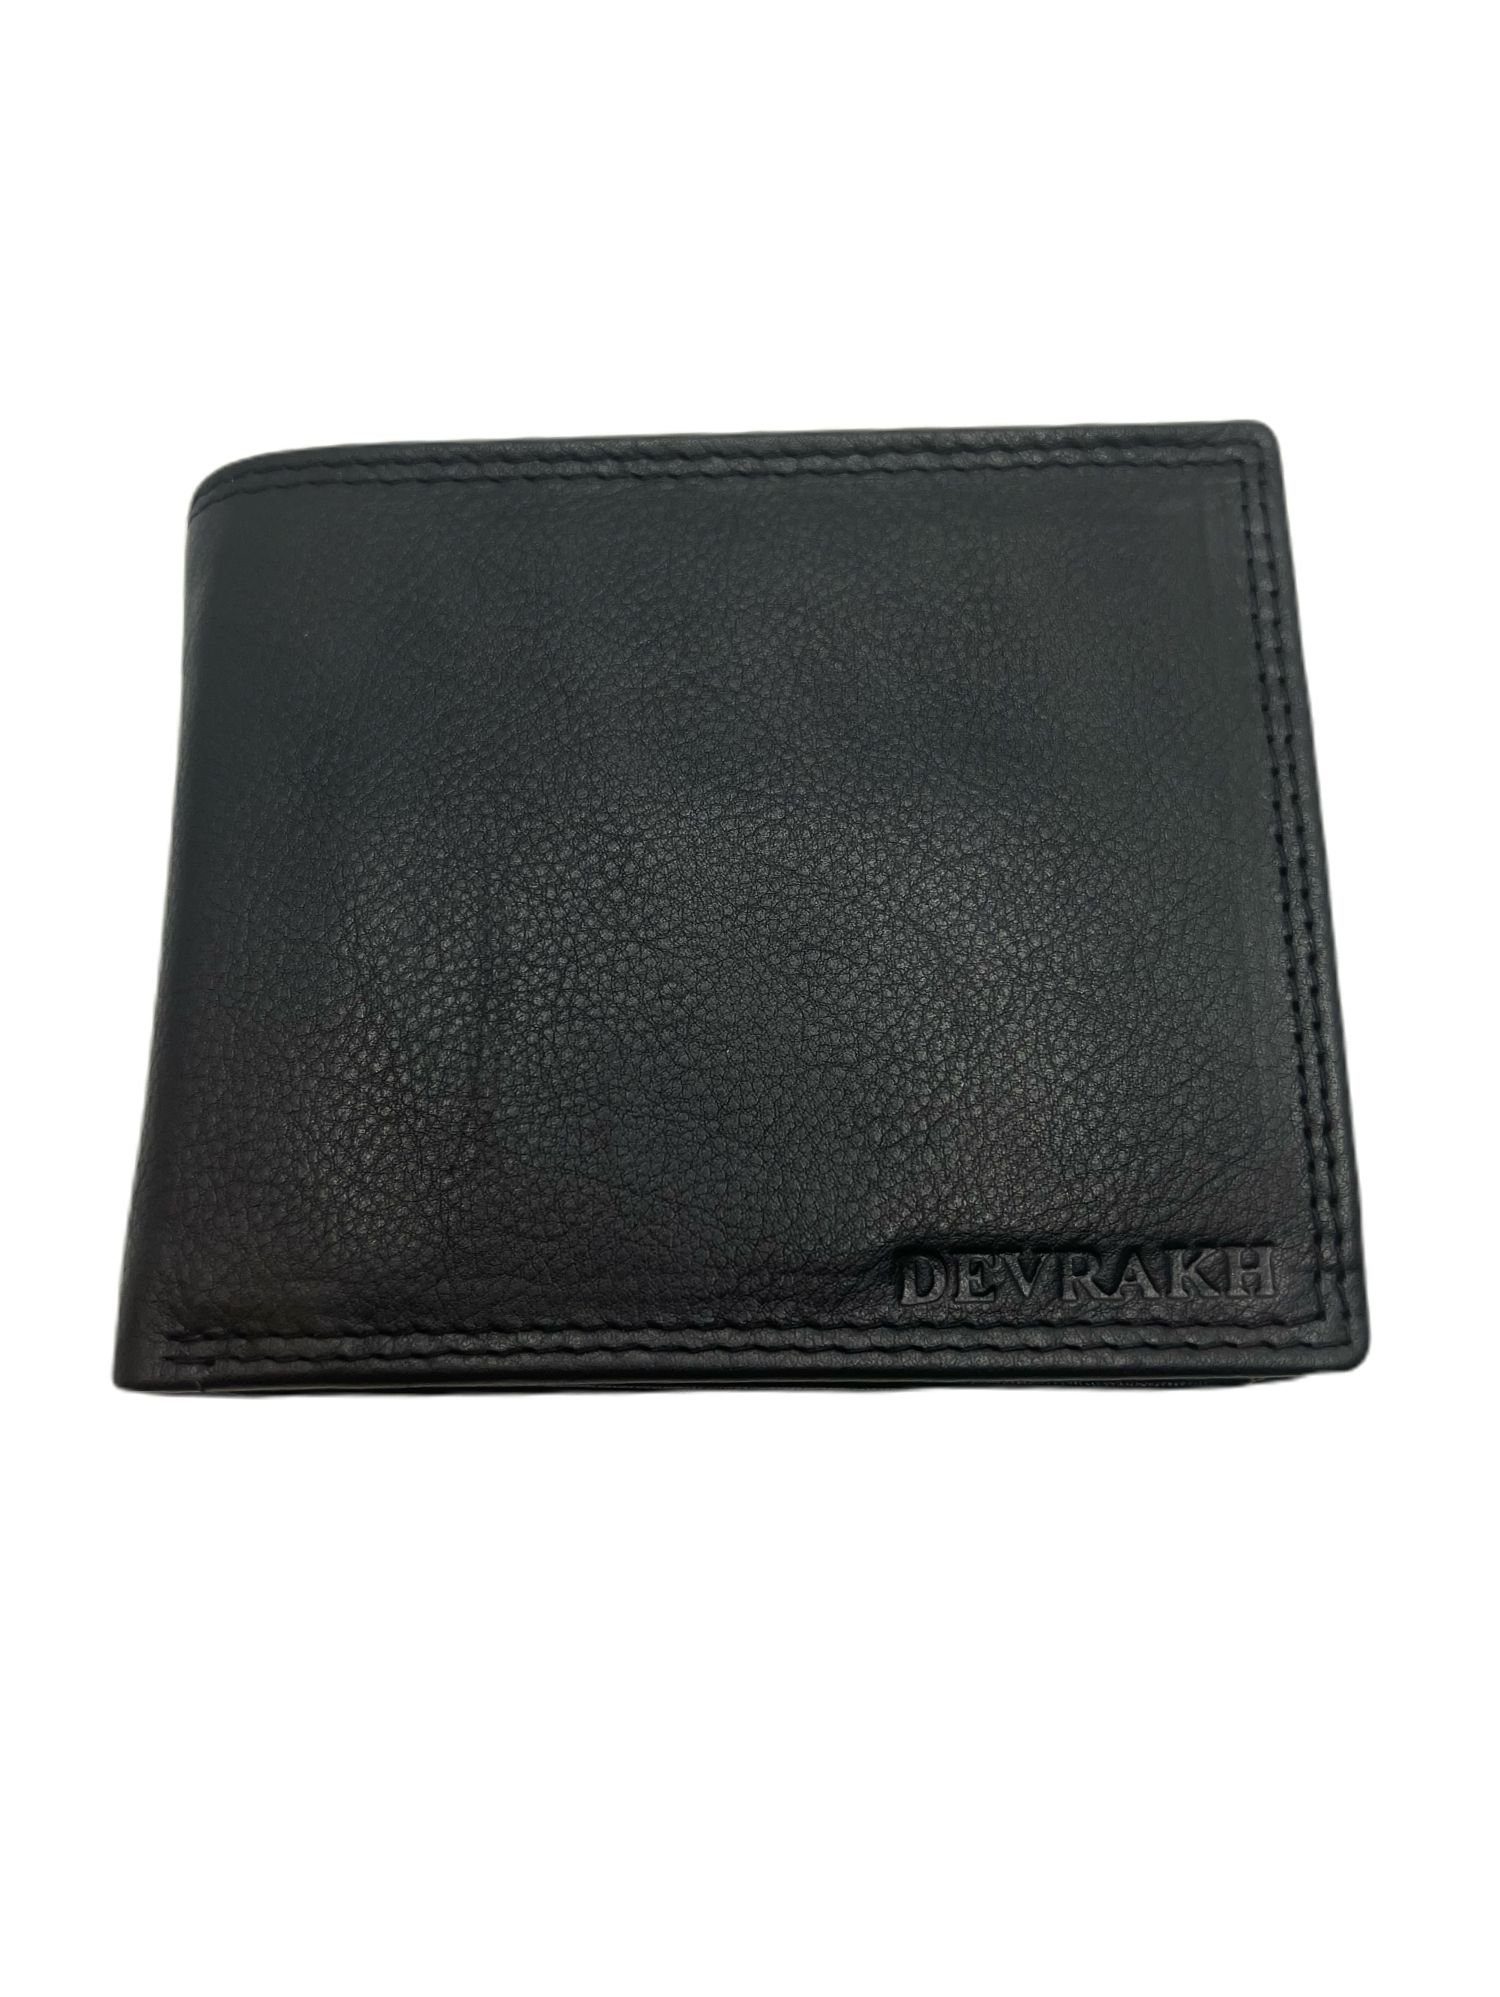 cofi1453 Geldbörse Herren Portemonnaie aus Nappa Leder mit RFID Schutz, 16 Kartenfächer